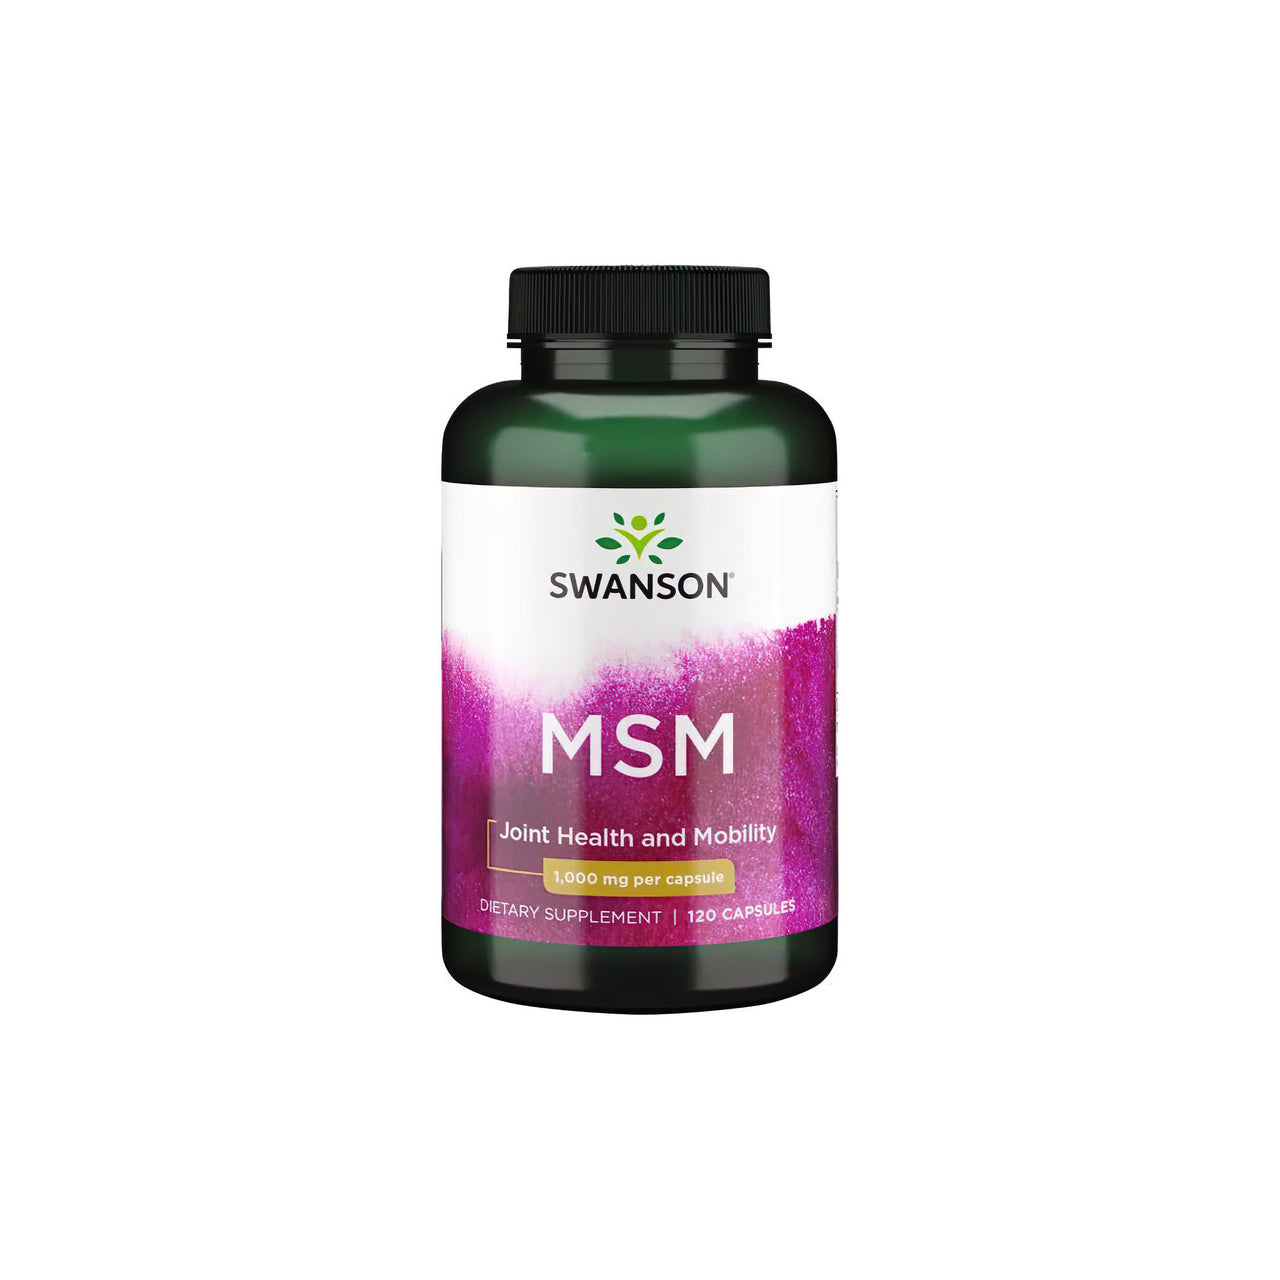 Um frasco de Swanson MSM 1000 mg 120 cápsulas, especificamente formulado para a saúde das articulações e dos tecidos conjuntivos, apresentado num fundo branco limpo.